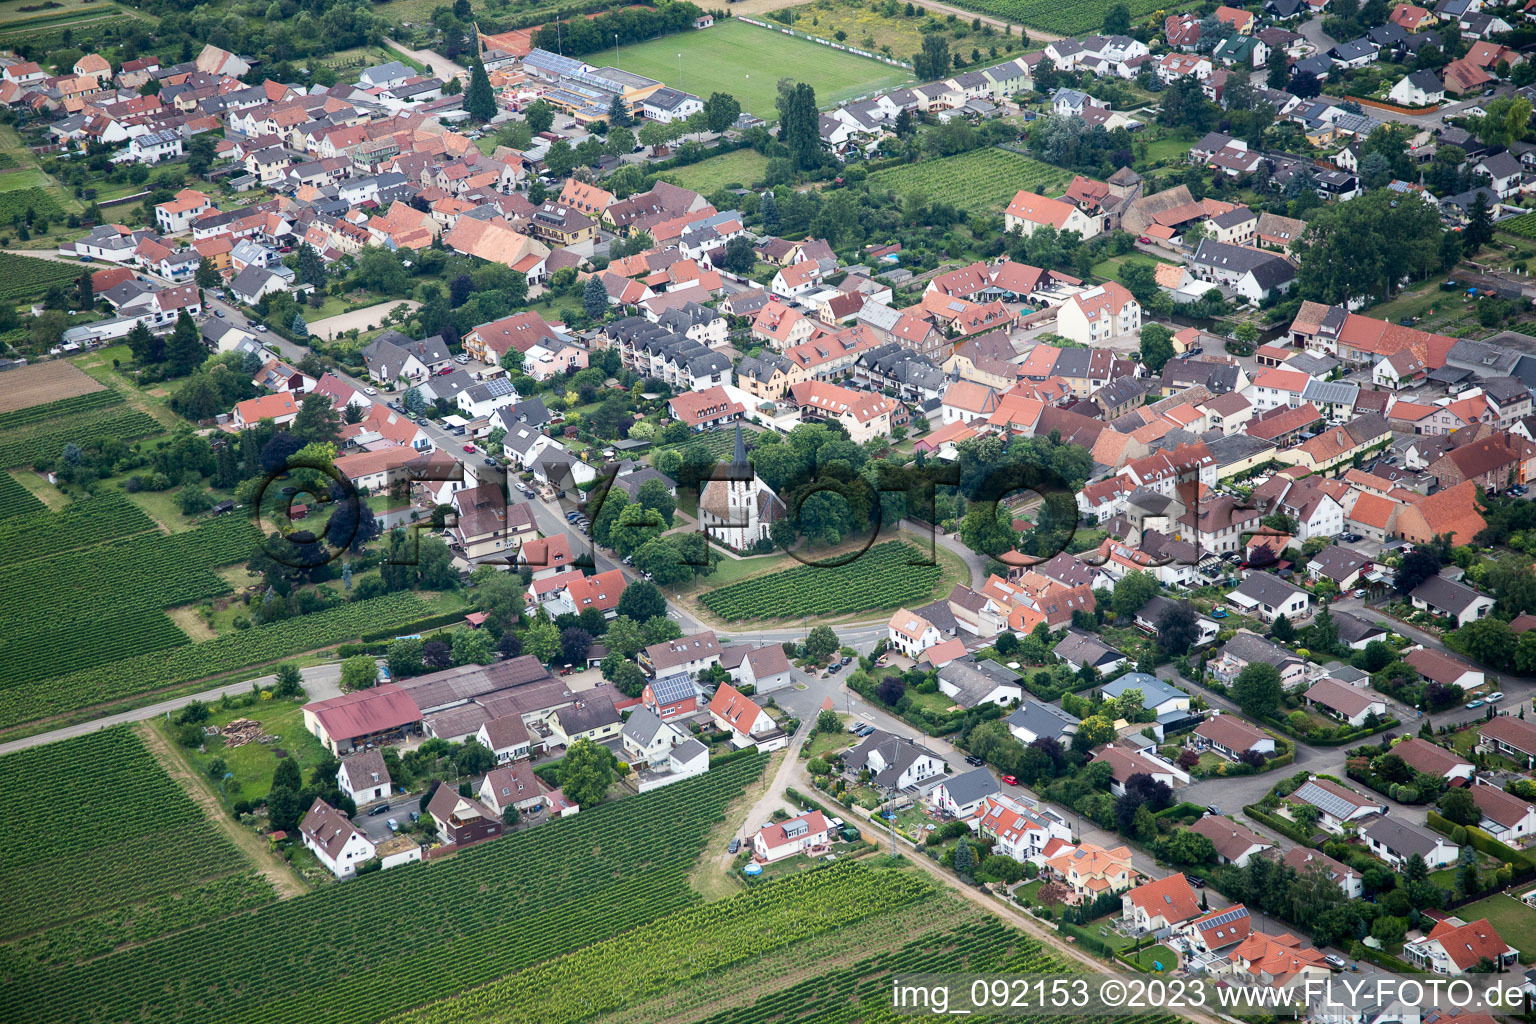 Gönnheim im Bundesland Rheinland-Pfalz, Deutschland von oben gesehen